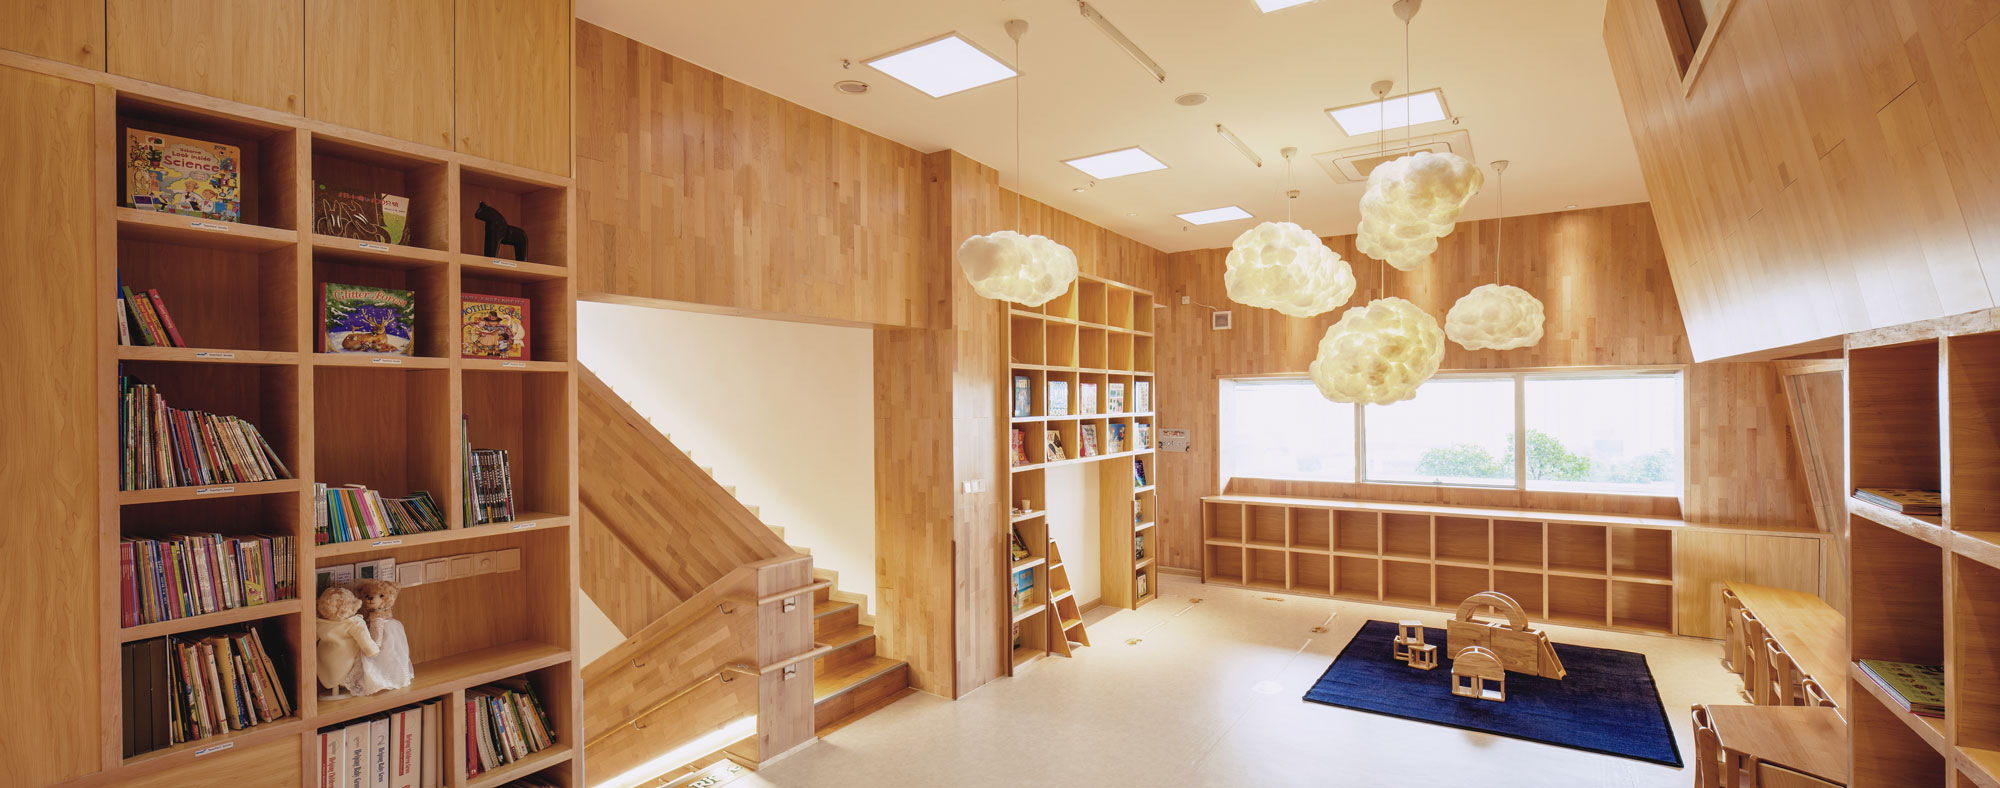 图片[12]|IBOBI国际幼儿园福田校区|ART-Arrakis | 建筑室内设计的创新与灵感